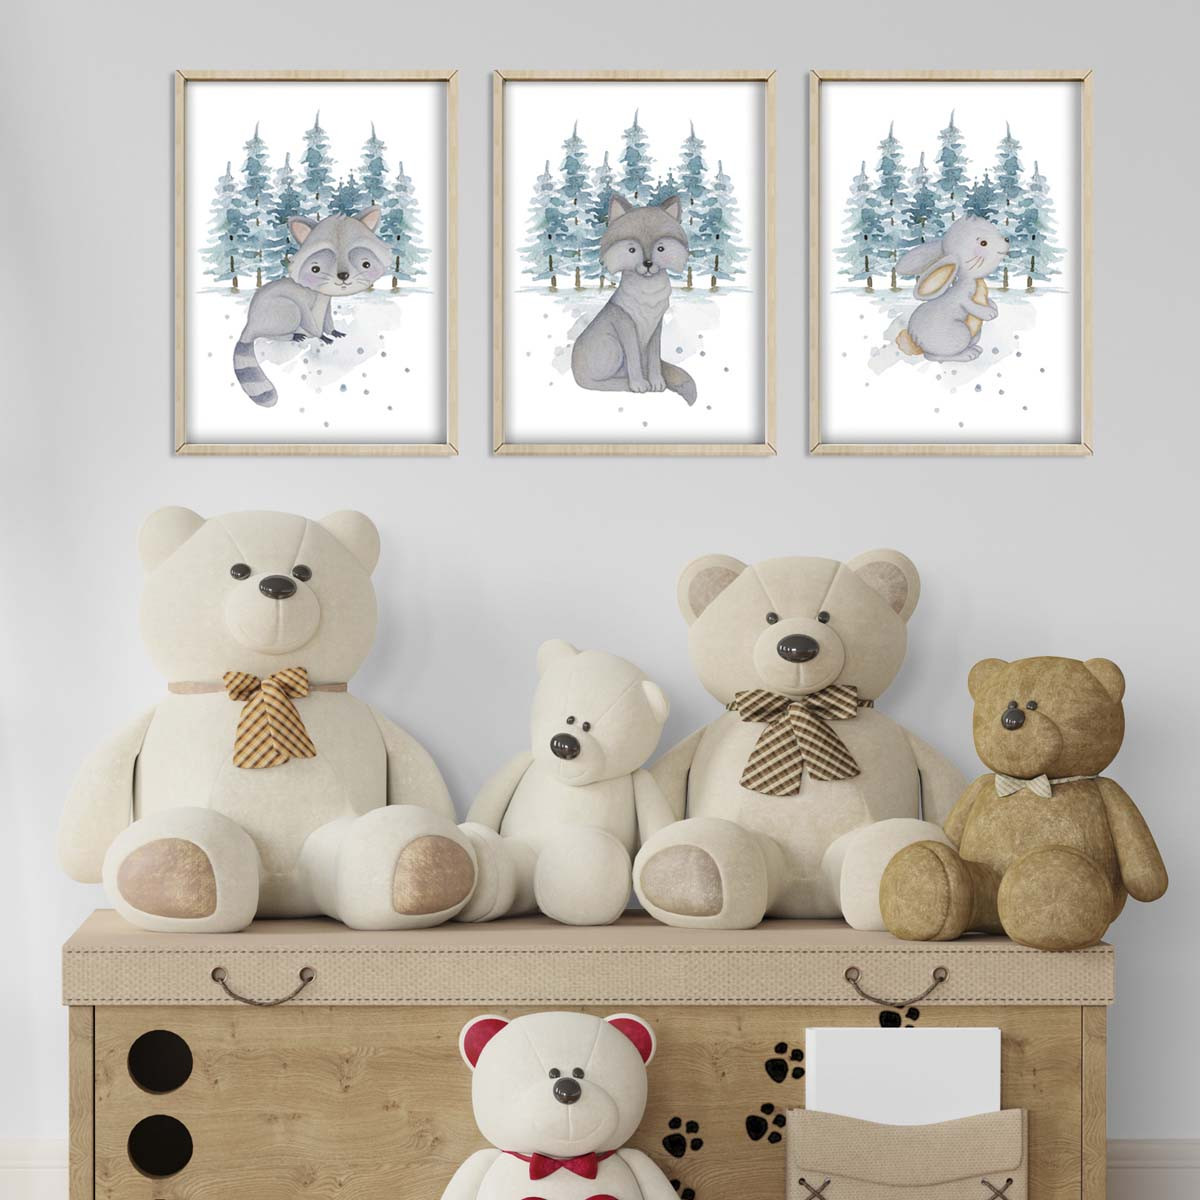 Leśne zwierzątka - zestaw obrazków do pokoju dziecka.